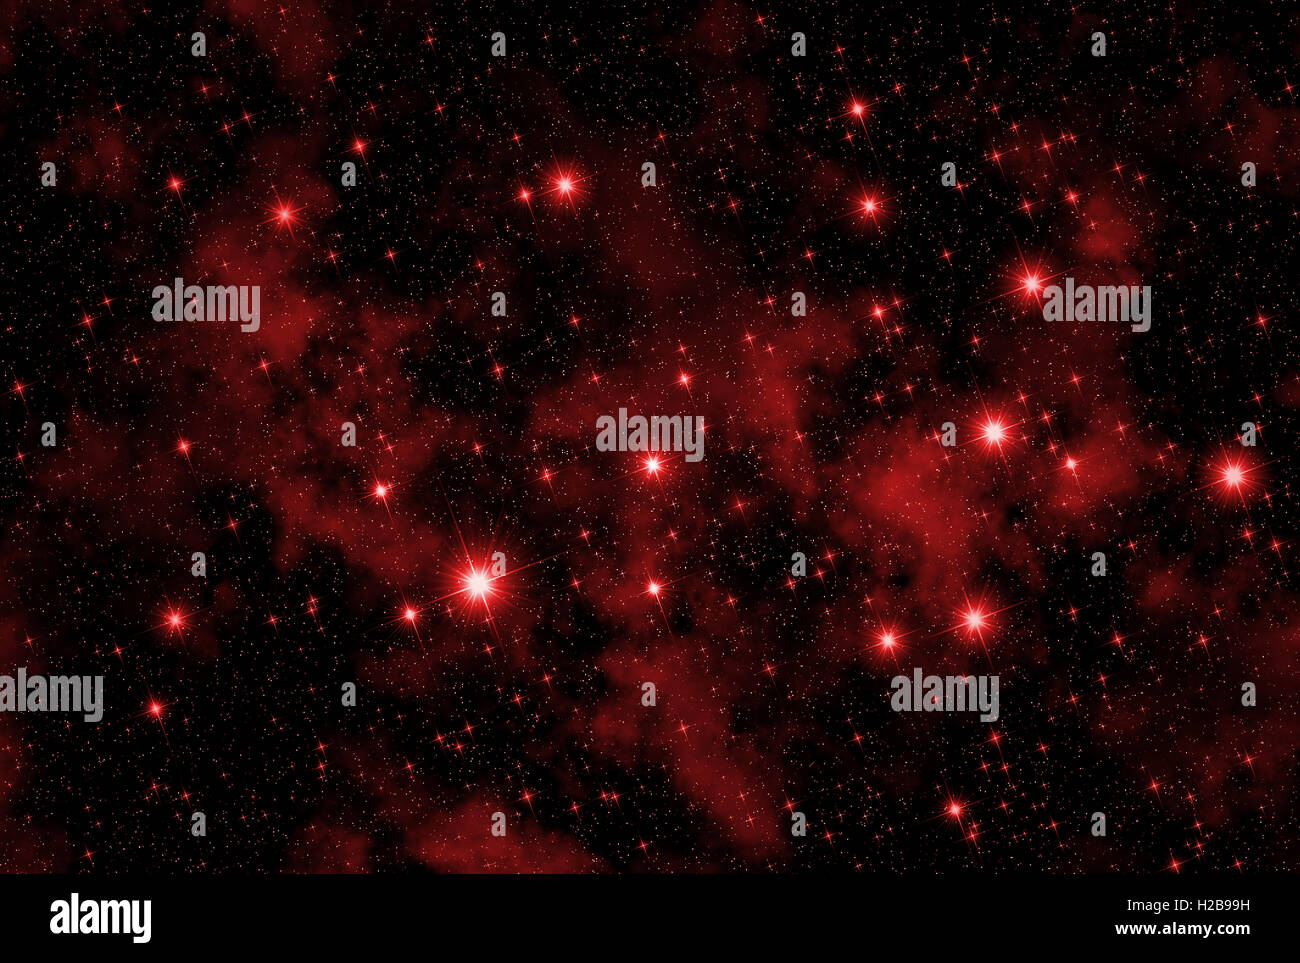 Abbildung, die zeigt, ein Universum-Konzept mit dem Raum überfüllt von rot funkelten funkelnden Sternen und Nebeln. Stockfoto